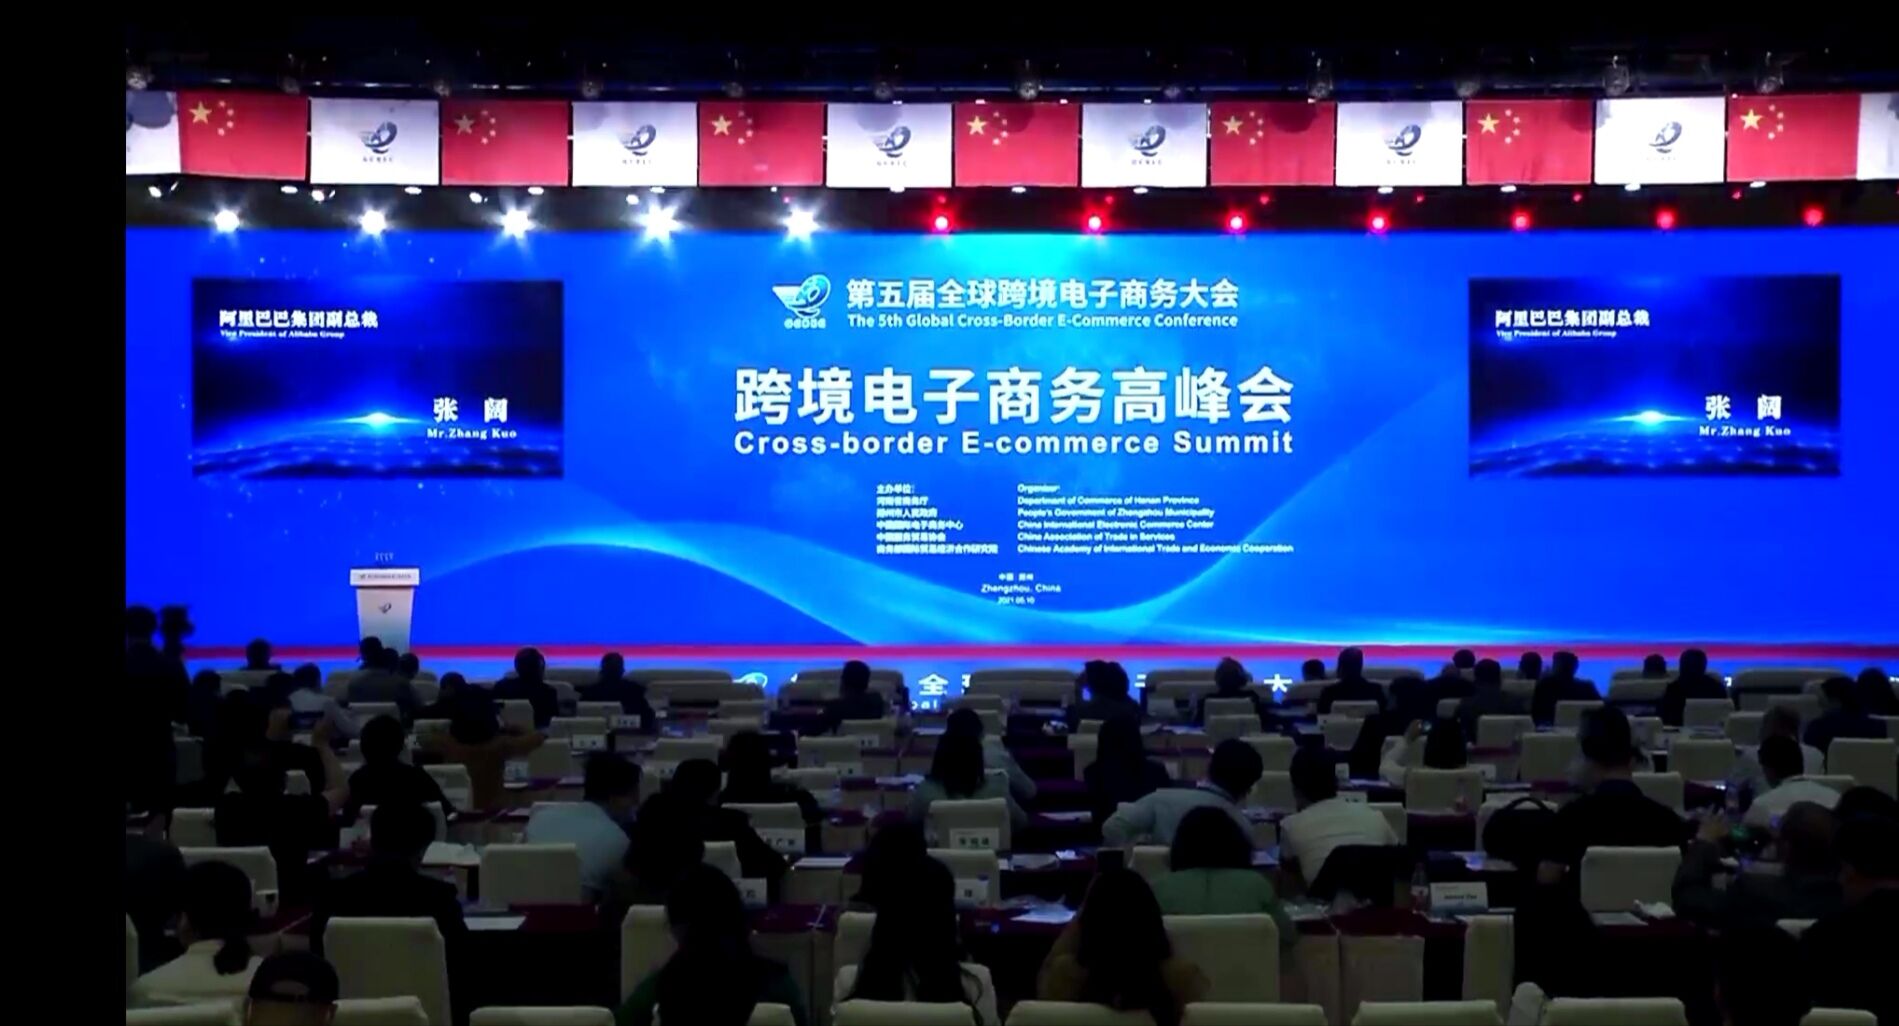 第五屆全球跨境電子商務大會在鄭州舉行